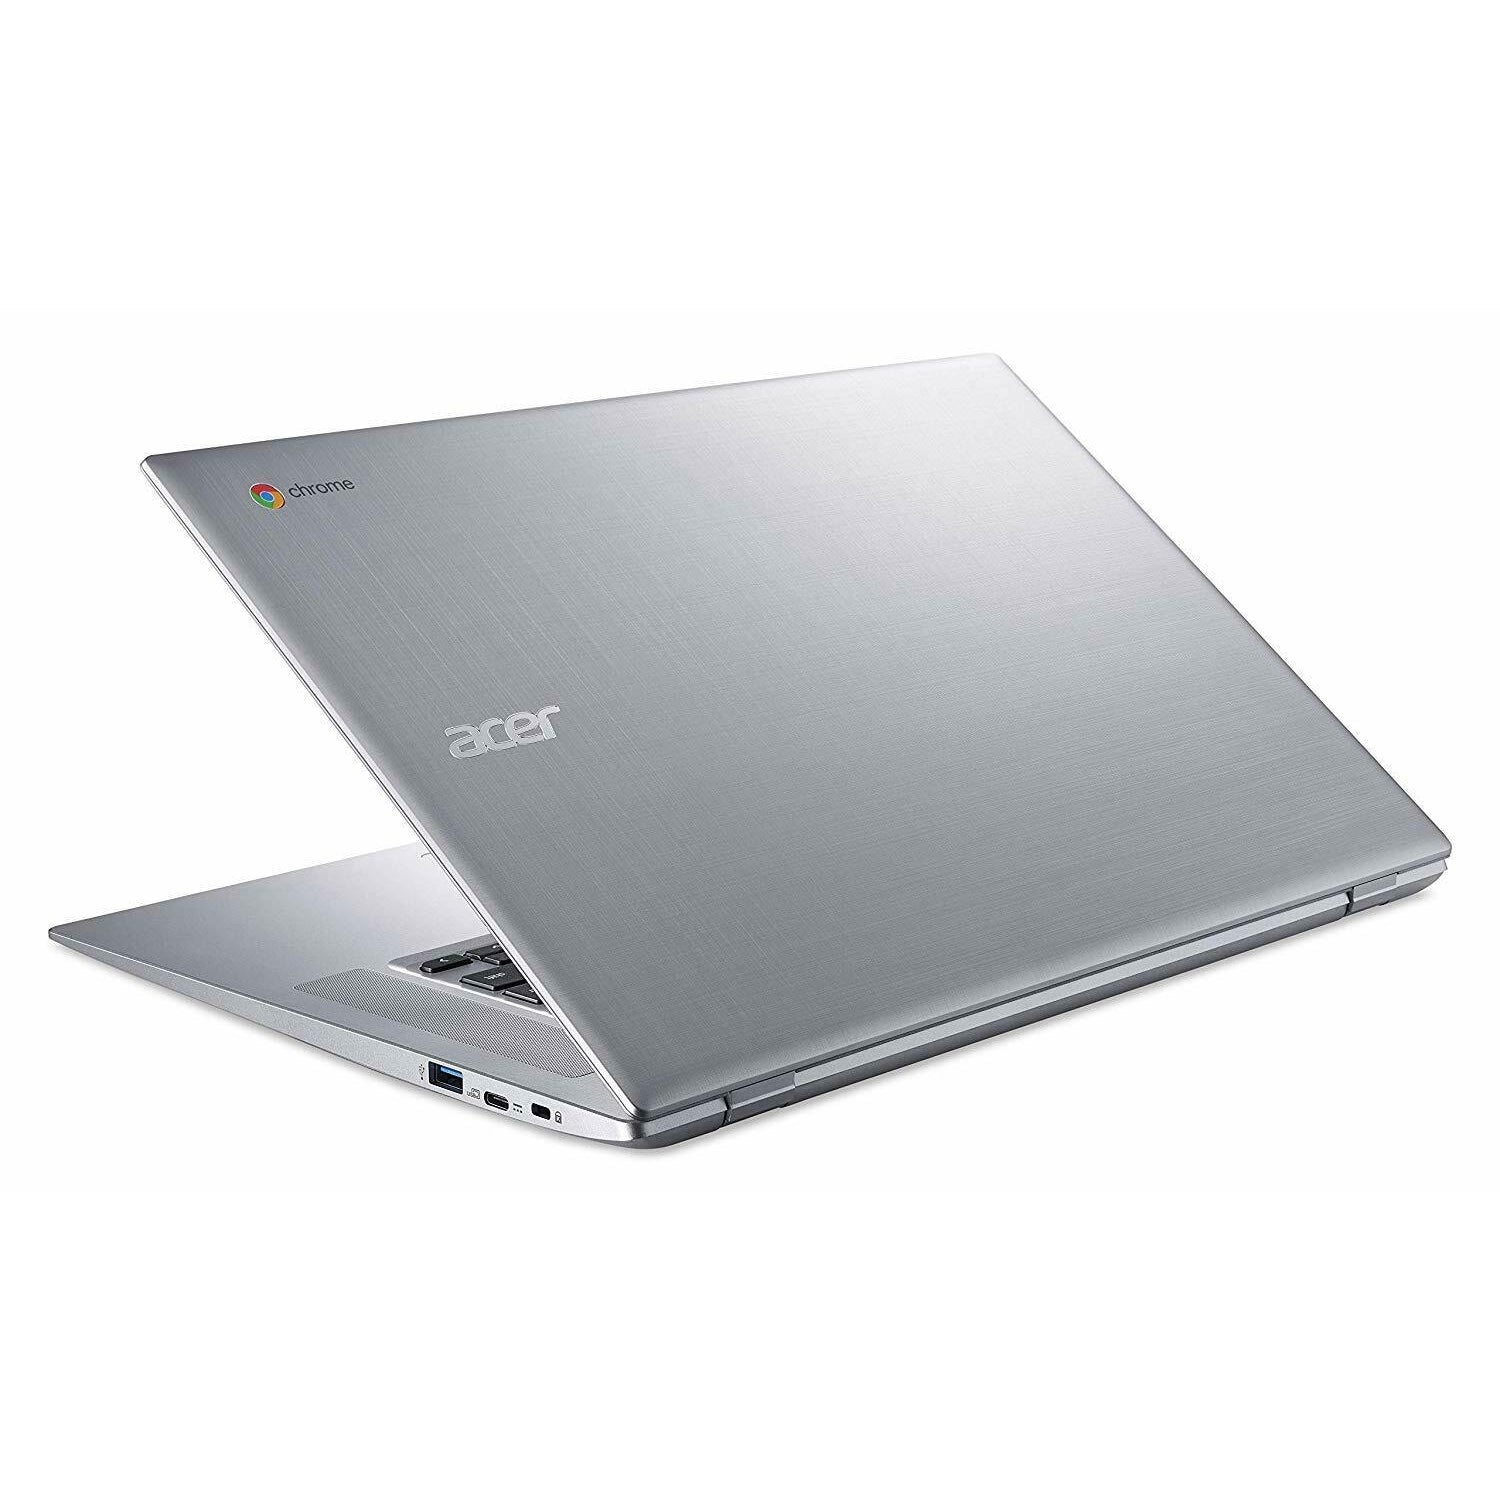 Acer CB315-2H-66VC, AMD A6-9220C, 4GB RAM, 64GB eMMC, 15.6" Silver (NX.H8SEK.003) - Refurbished Excellent